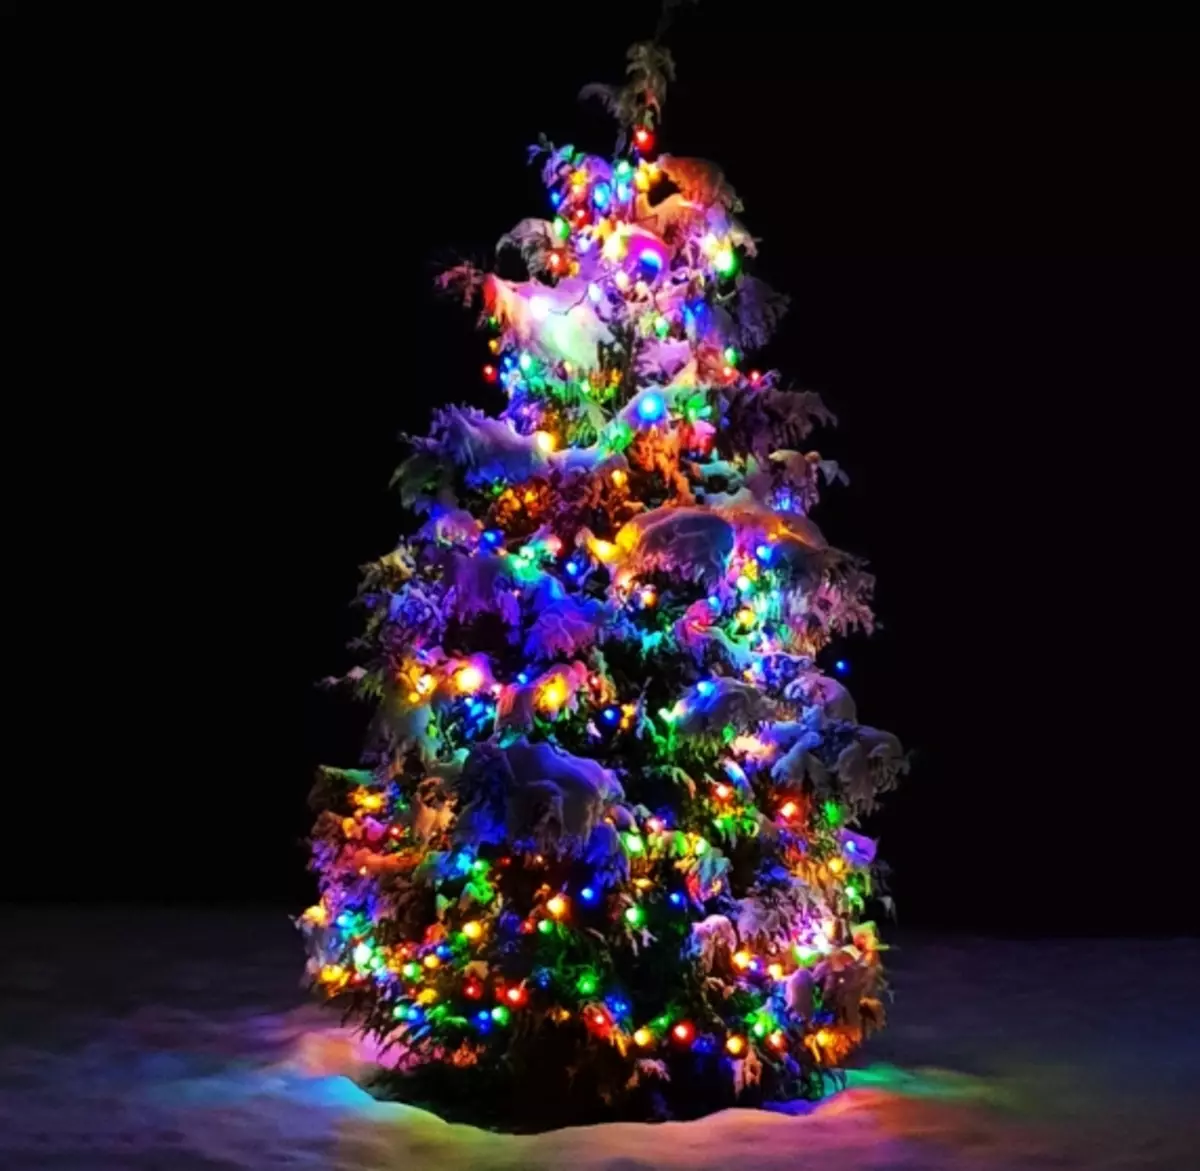 Ako zdobí vianočný strom s vencom? Ako správne a krásne obliekať to podľa schémy s žiariace elektrickej girlandami a ďalšie veniec? 7630_29